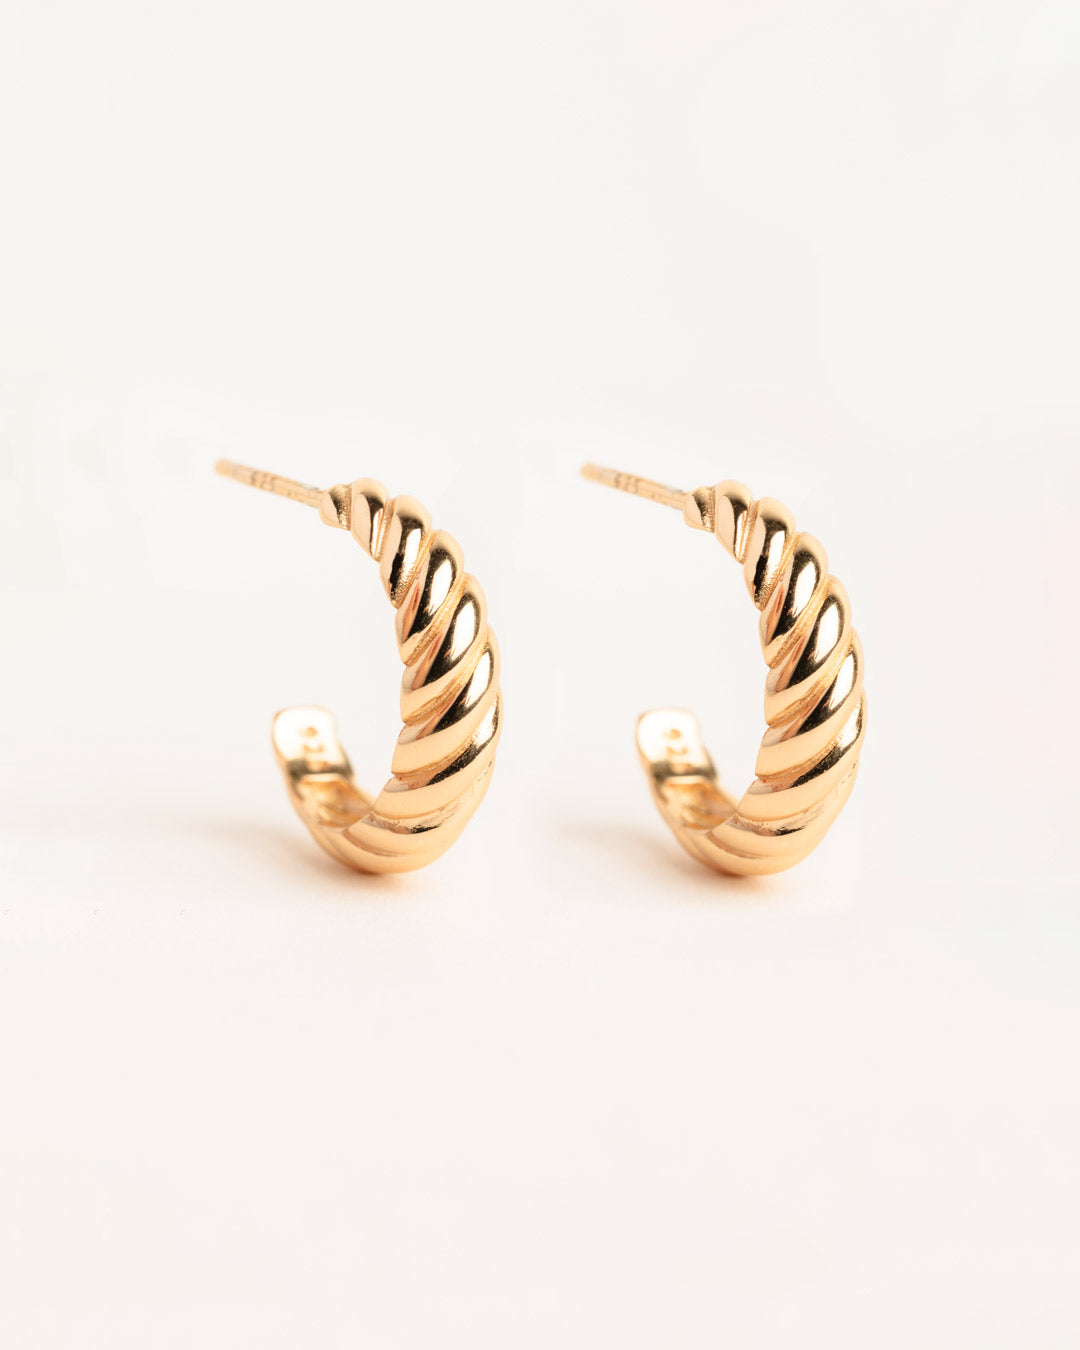 18ct Gold Vermeil Twisted Hoop Earrings